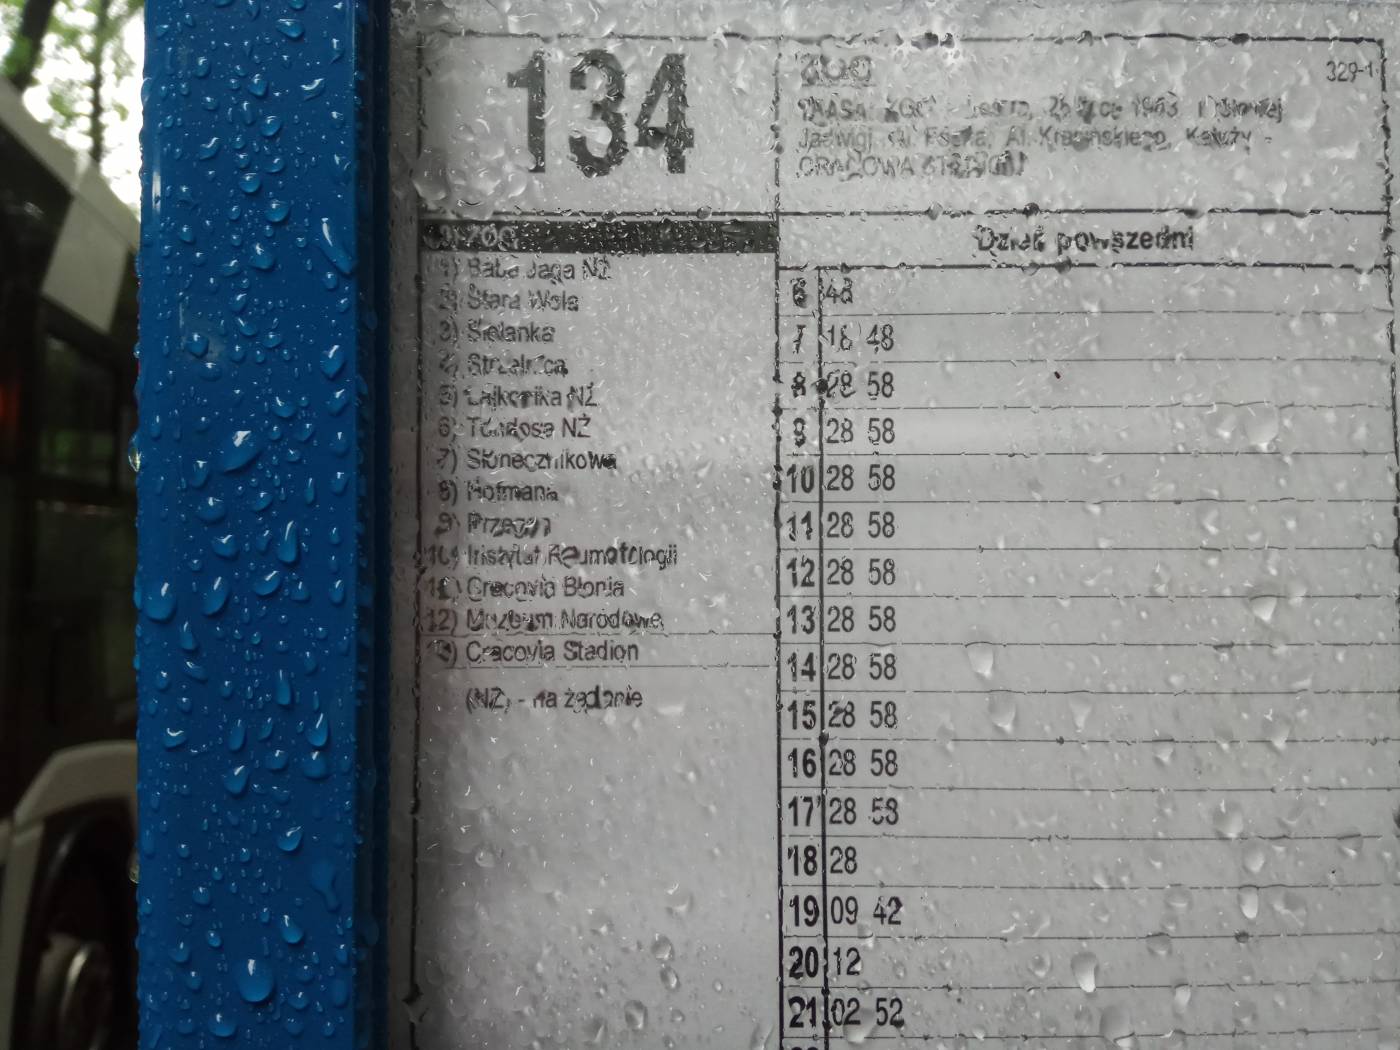 Расписание автобуса 134 в Краковский зоопарк